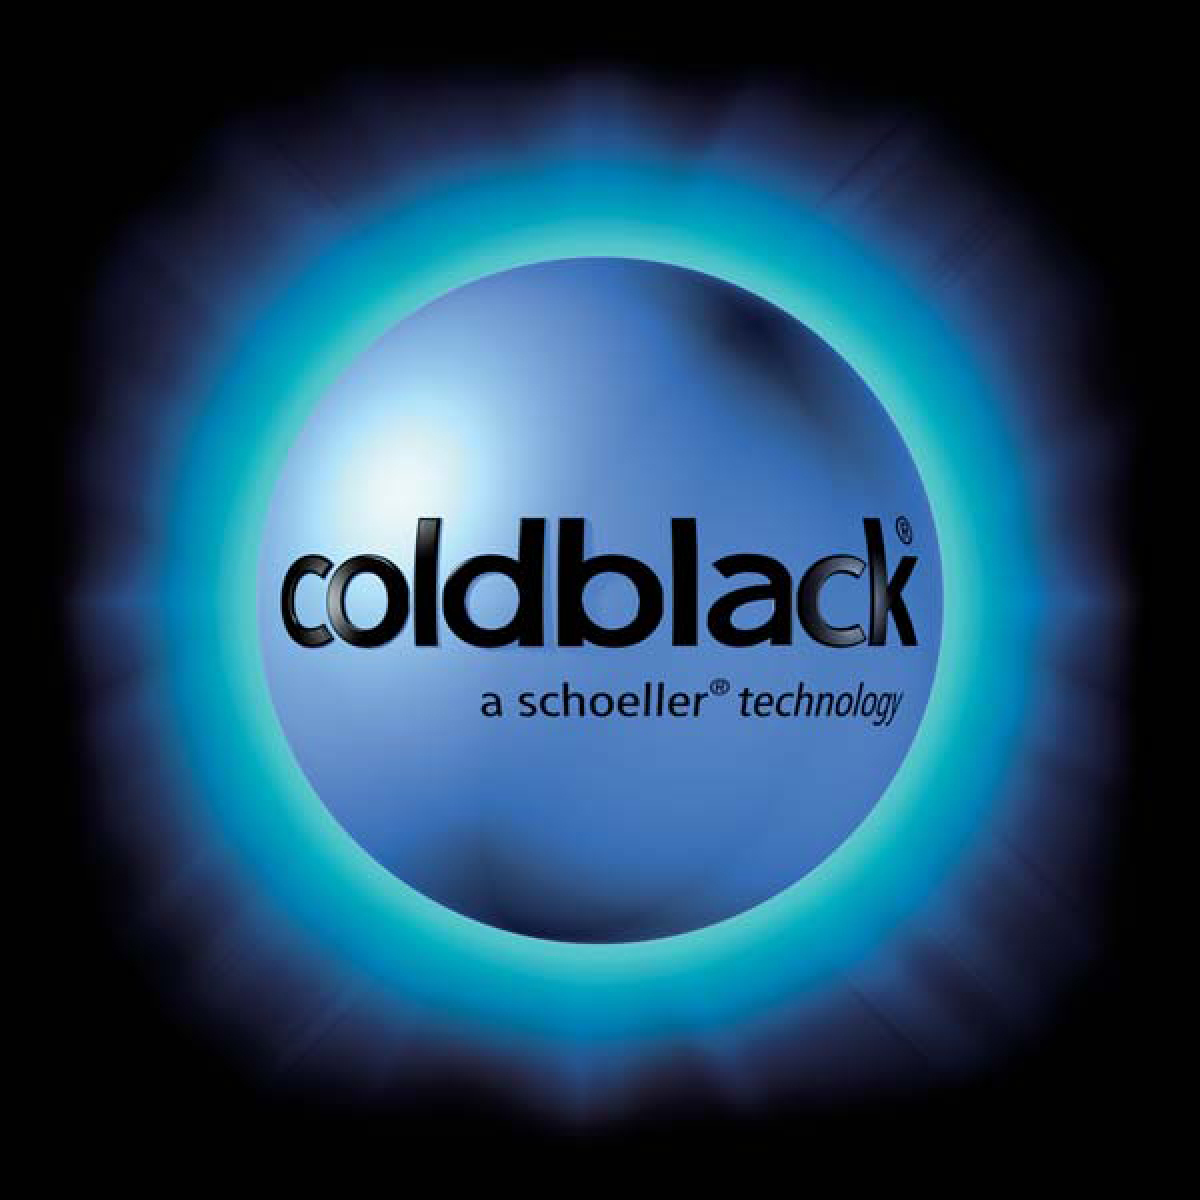 coldblack_